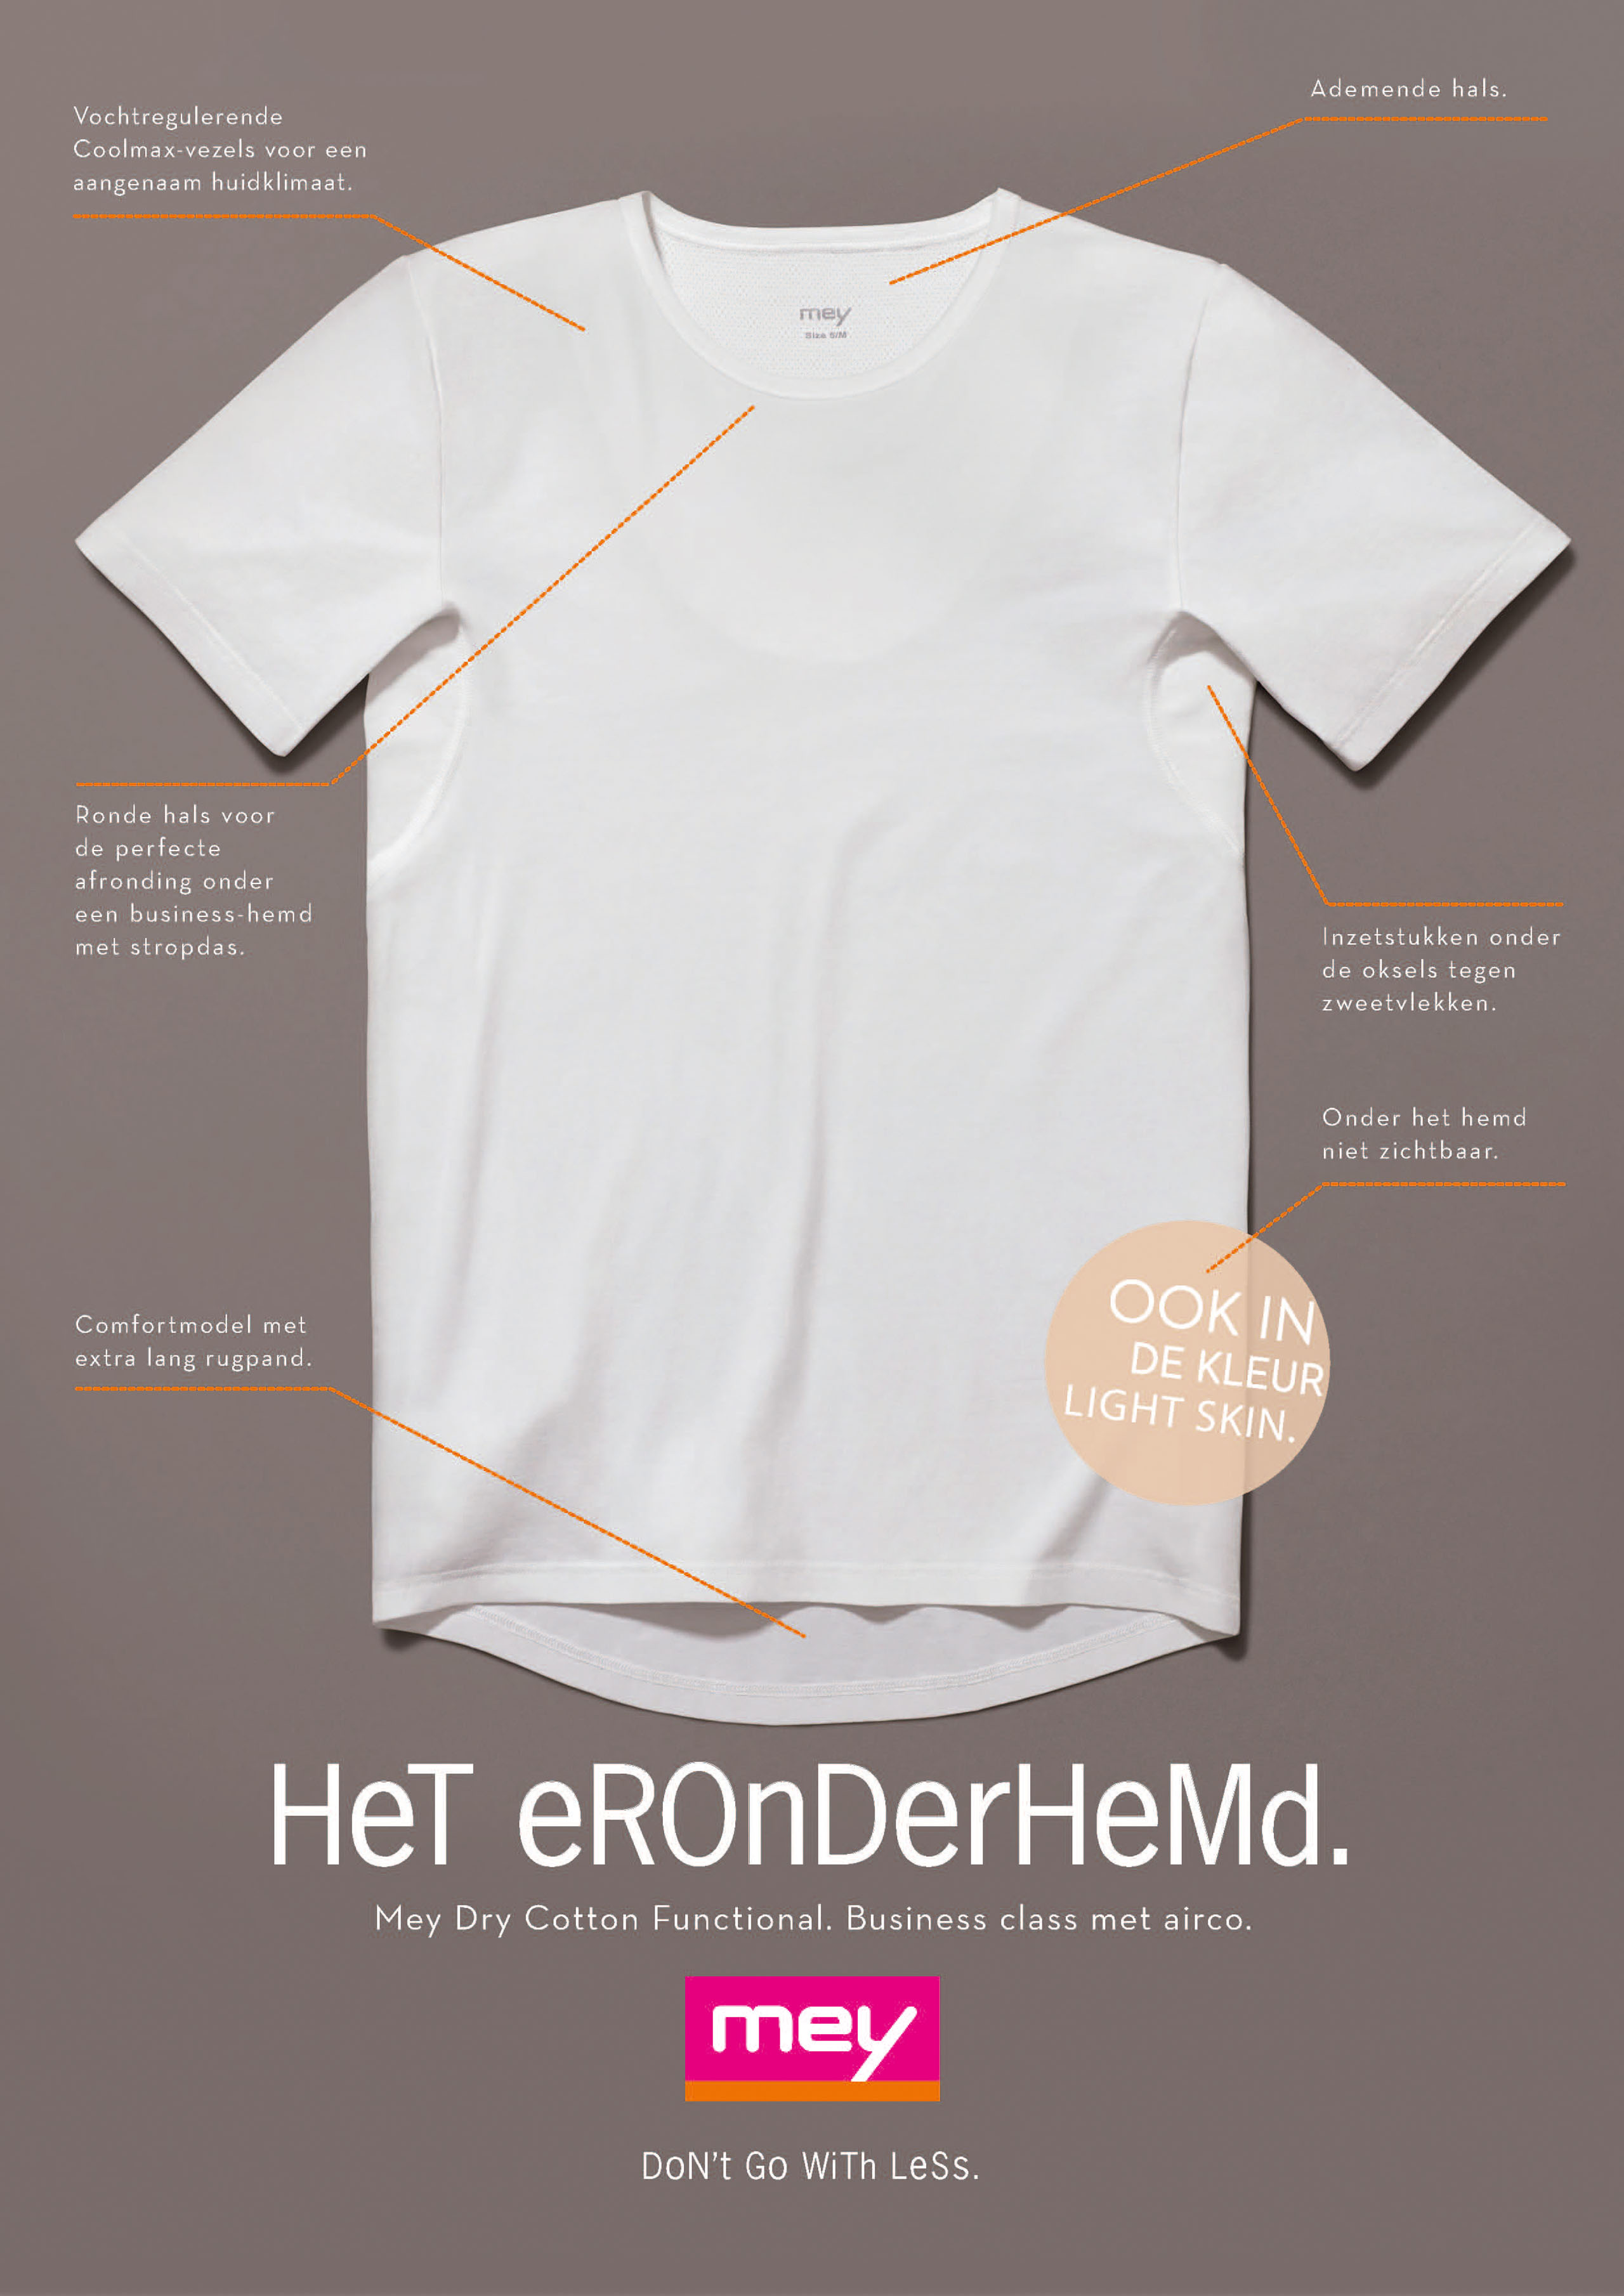 advertentie voor het onderhemd: innovatie voor de zakenman, geen zweetvlekken en geen geurtjes onder het hemd, afbeelding van het onderhemd met voordelen | mey®